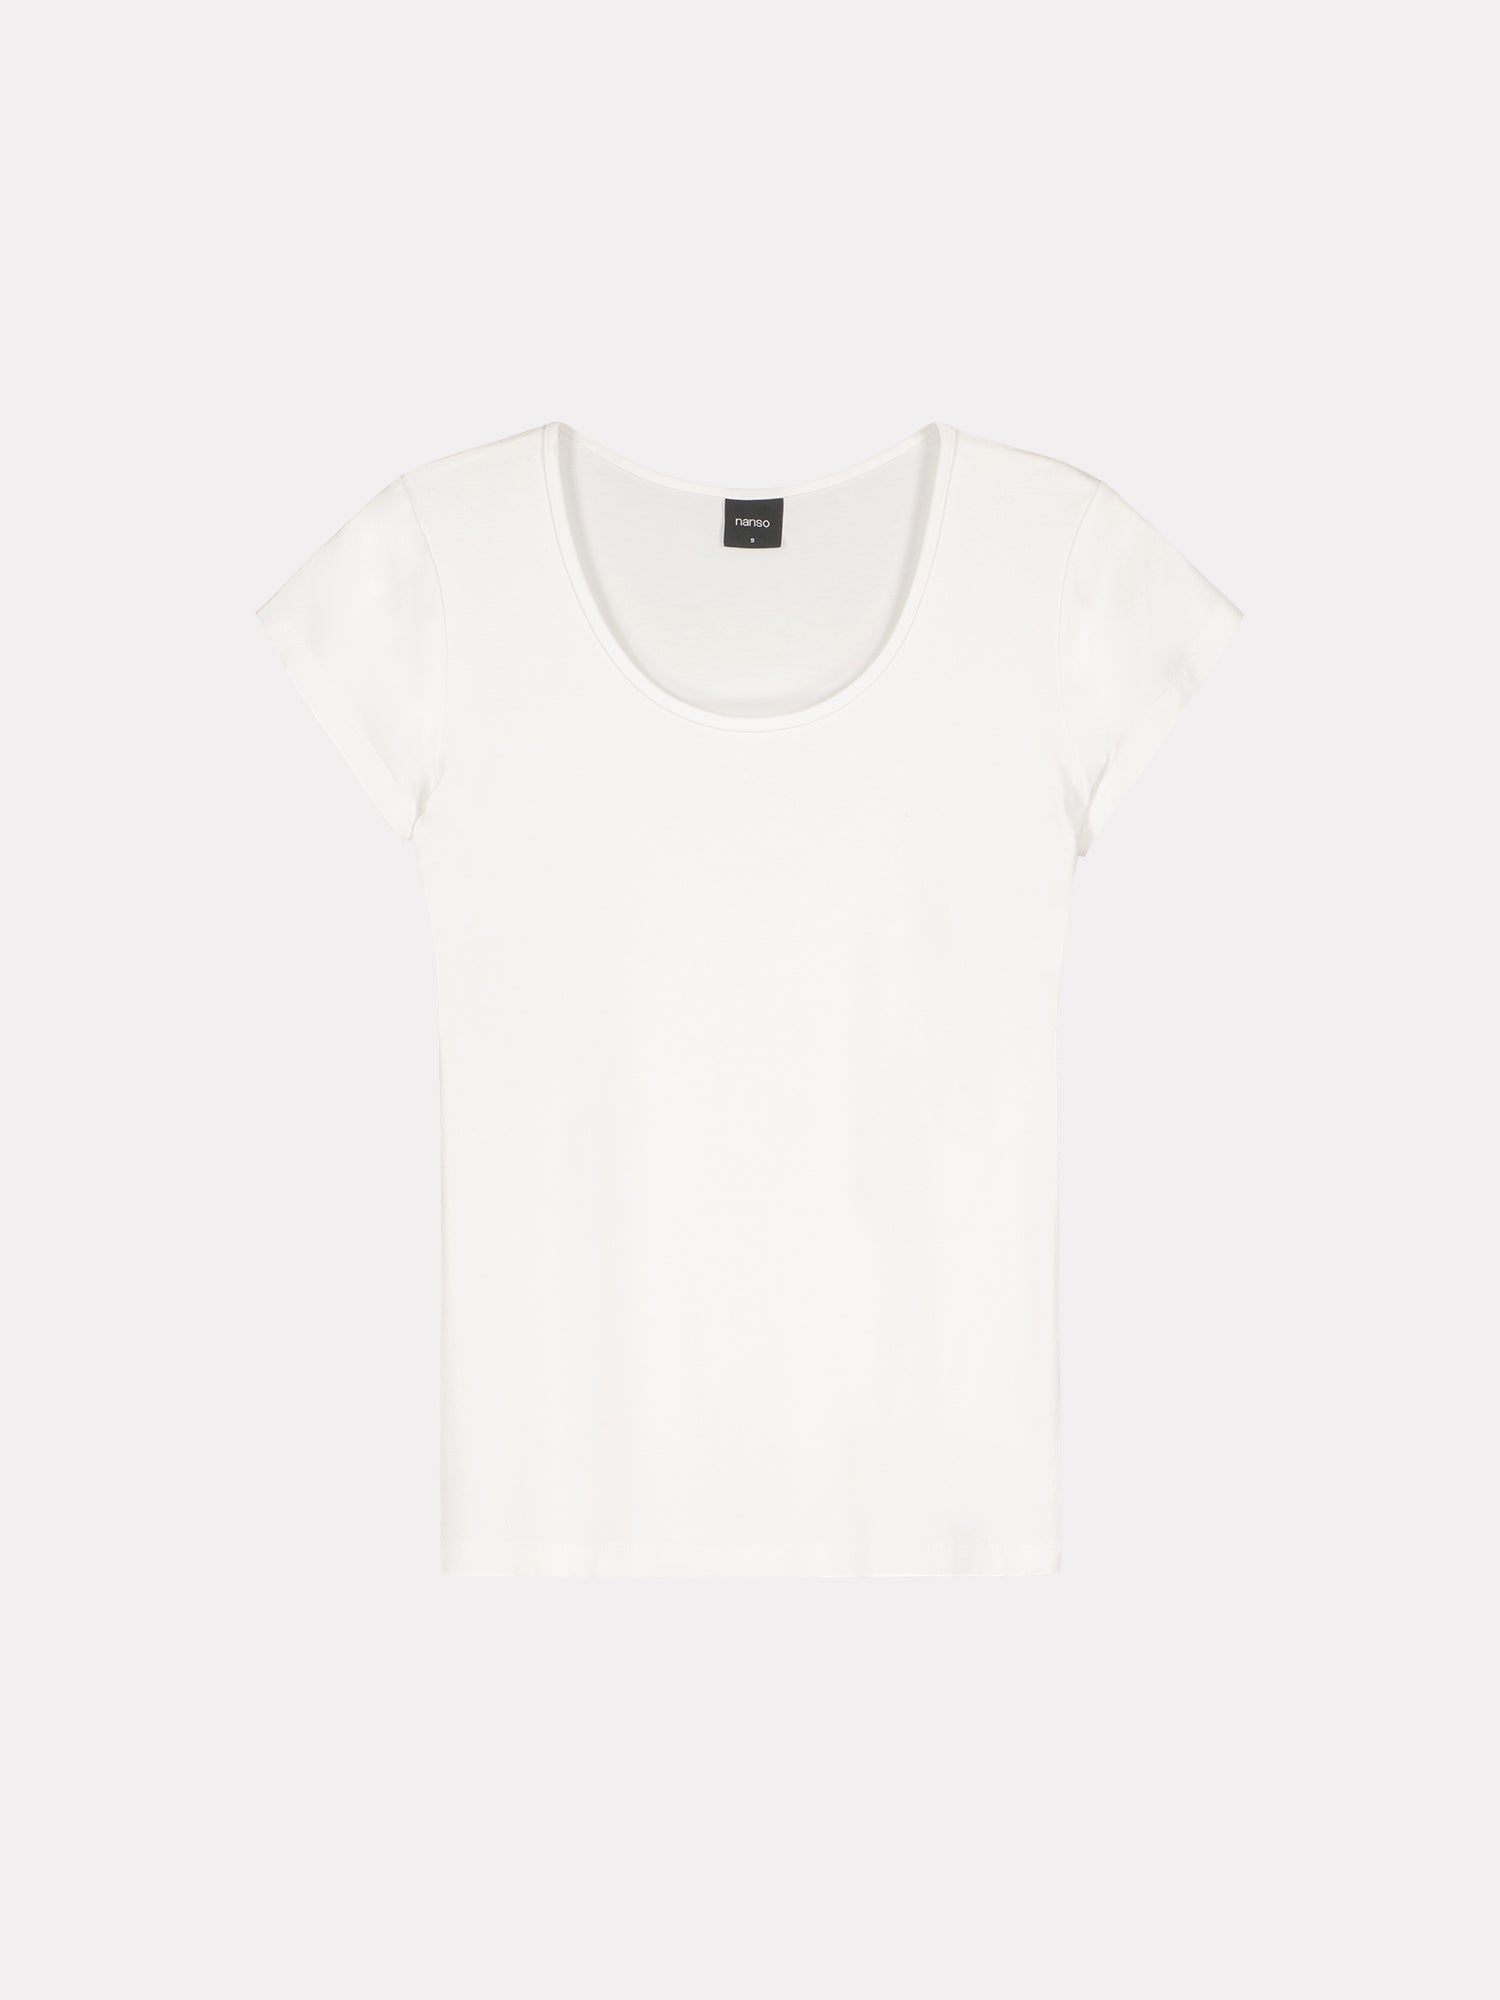 Naisten yksivärinen valkoinen Viskoosi Basic t-paita pyöreällä pääntiellä.